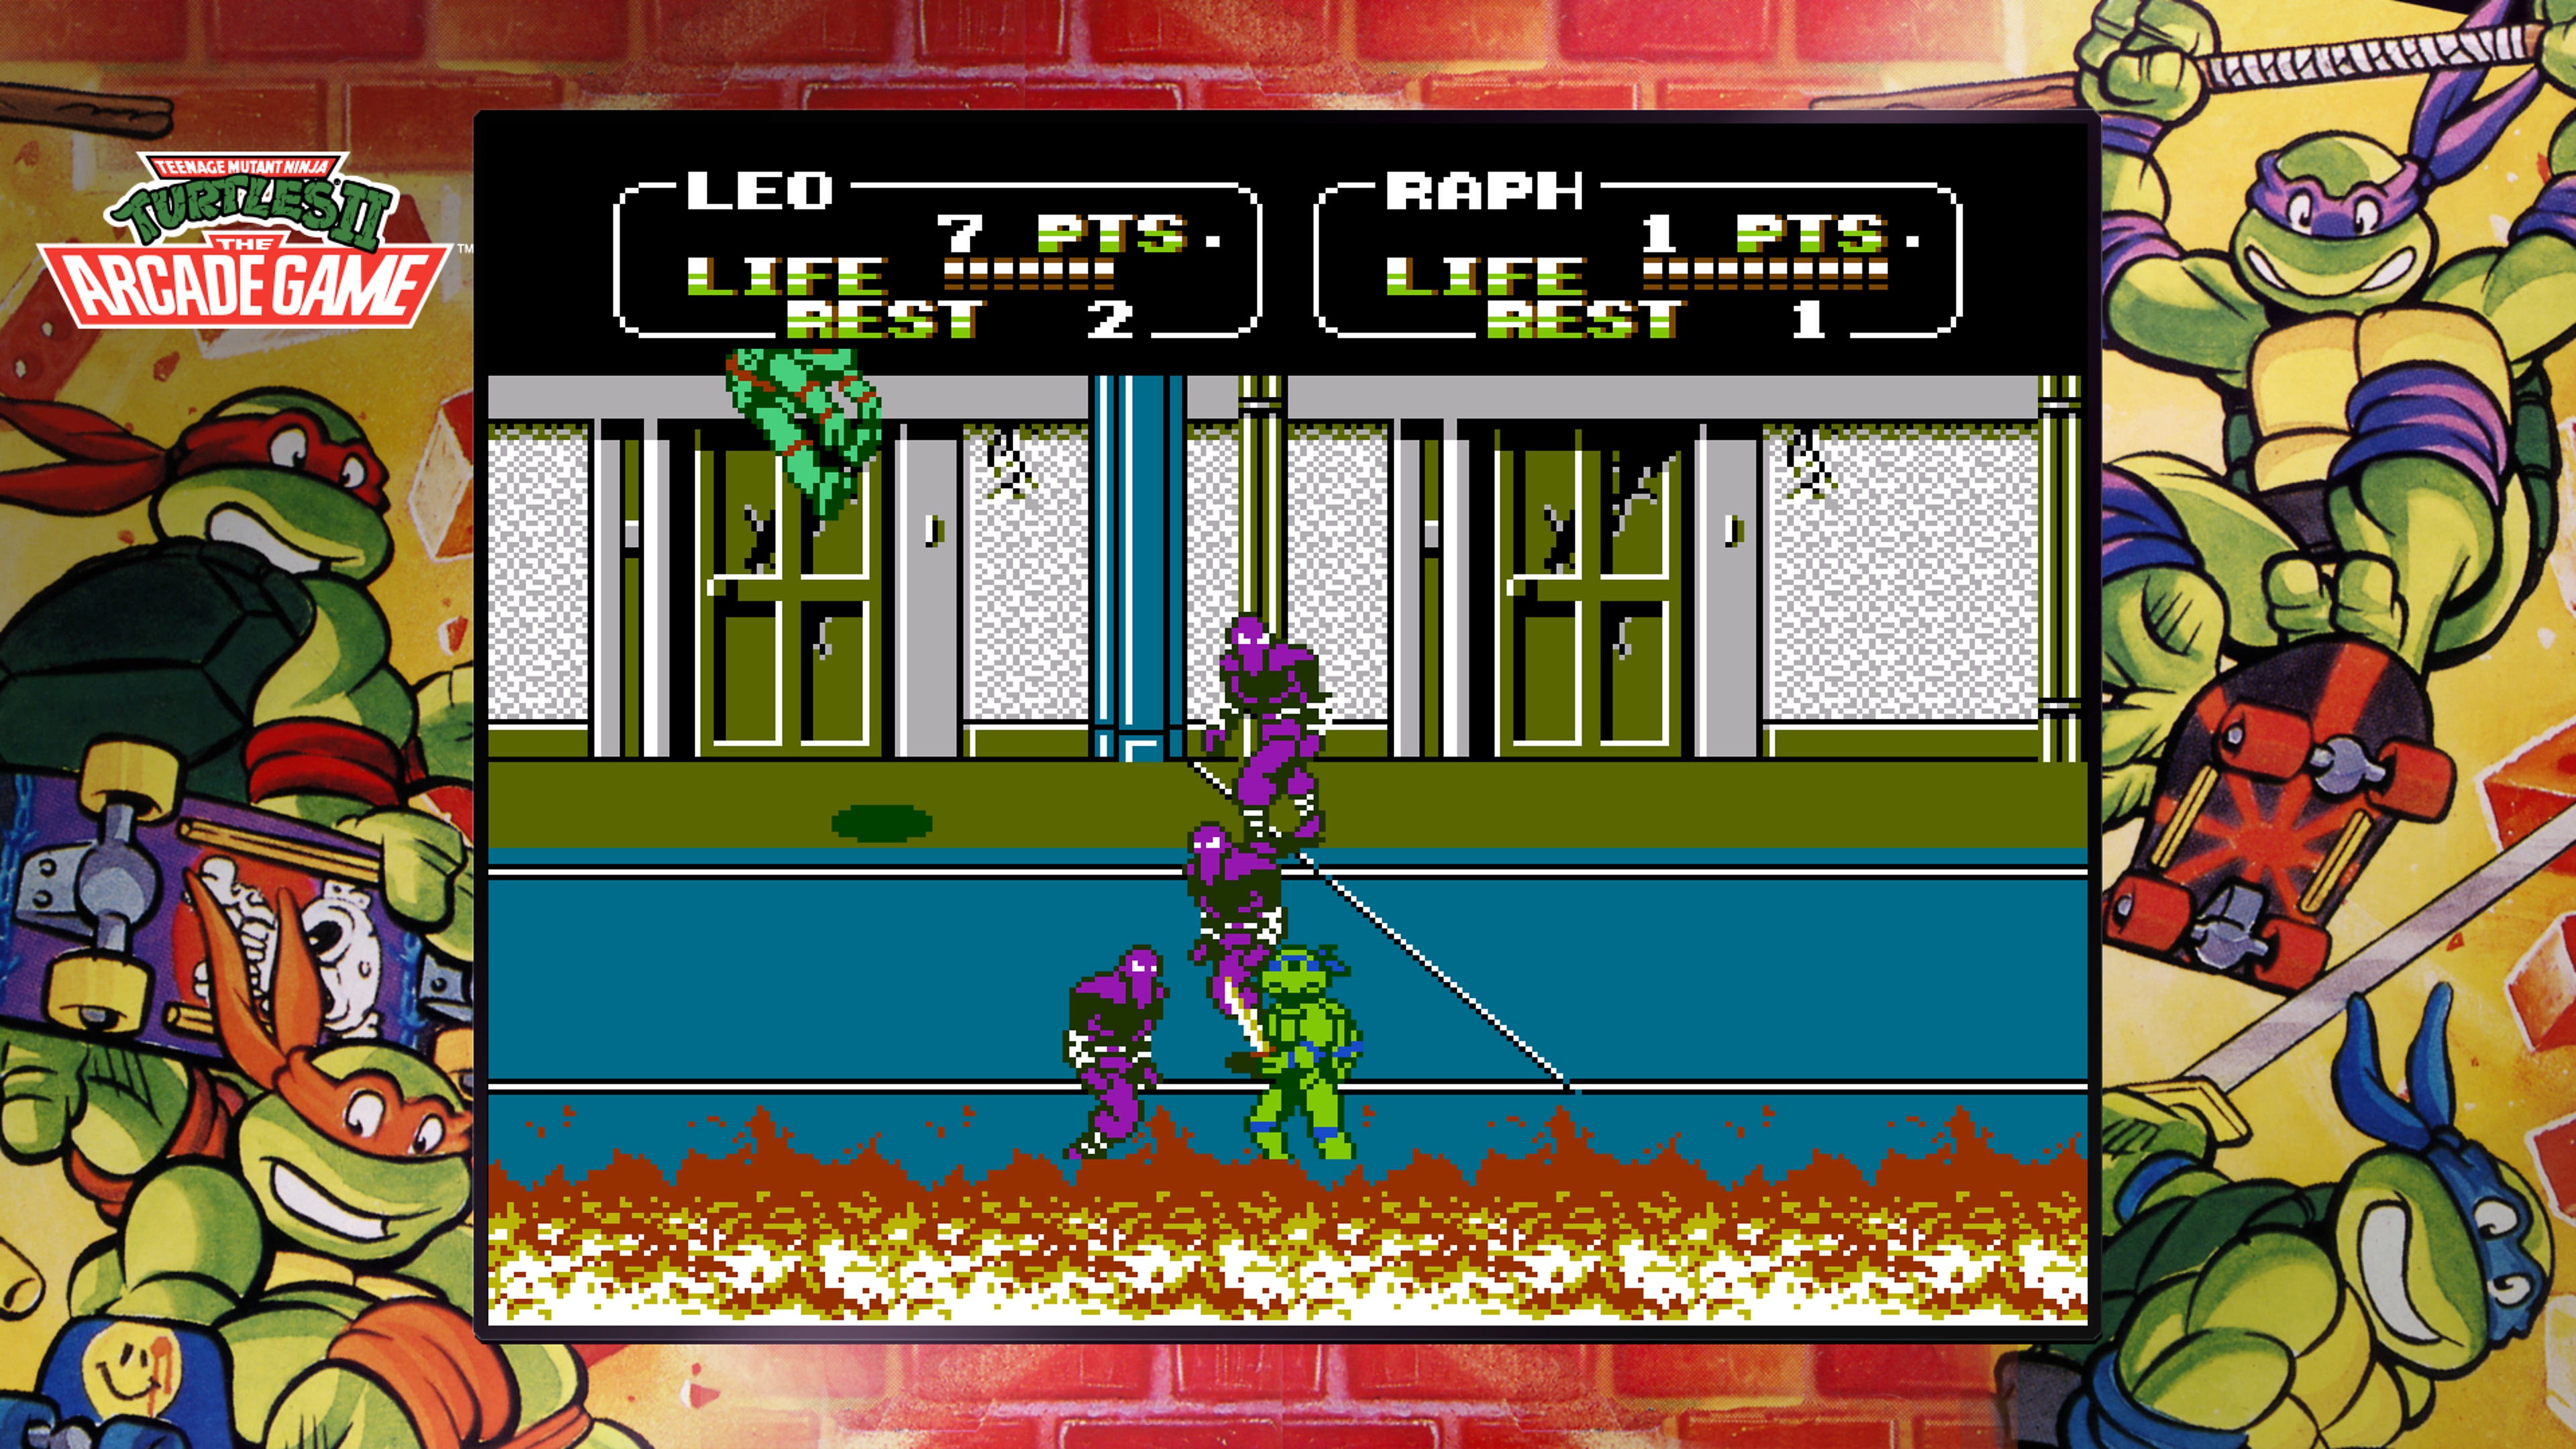 Teenage Mutant Ninja Turtles Collection – The Arcade Game skærmbillede af Leonardo, der kæmper mod Foot Clan